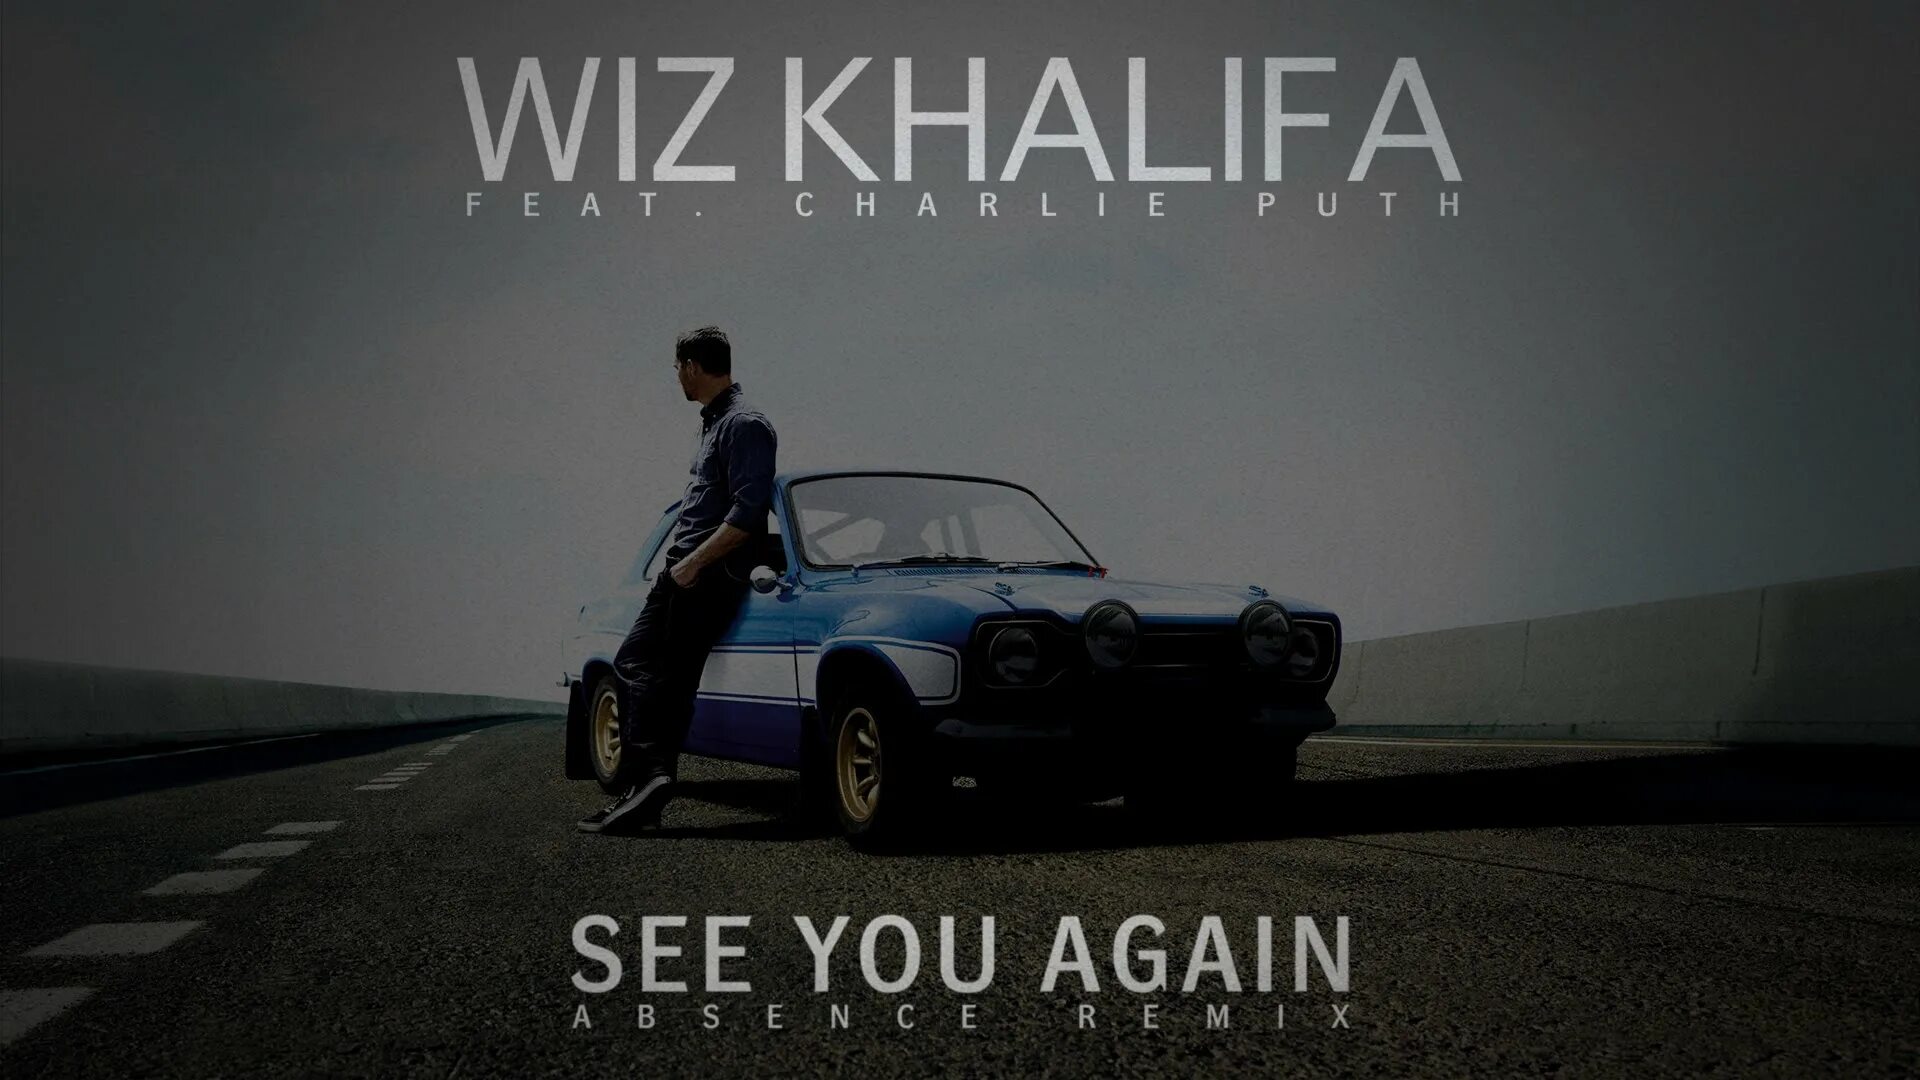 Wiz khalifa see you again. See you again Форсаж. See you again Wiz khalifa клип. Wiz khalifa Charlie Puth see you again.